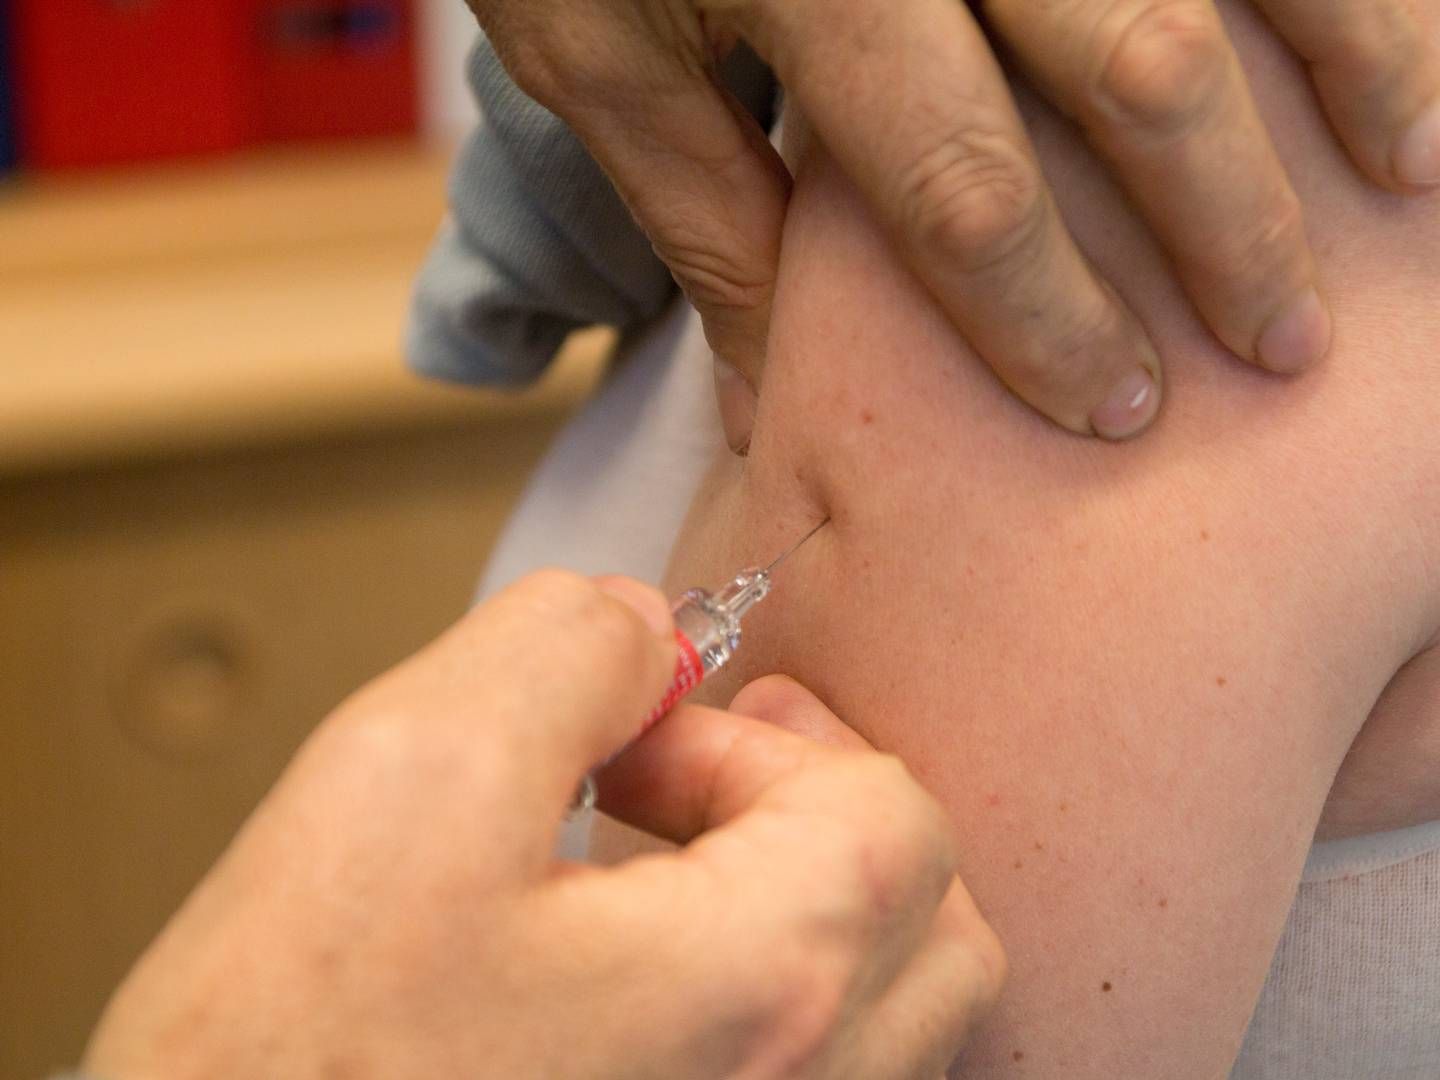 FUGLEINFLUENSA: Finske myndigheter innfører vaksinering mot fugleinfluensa på grunn av risikoen som pelsdyrfarmene utgjør. | Foto: Colourbox